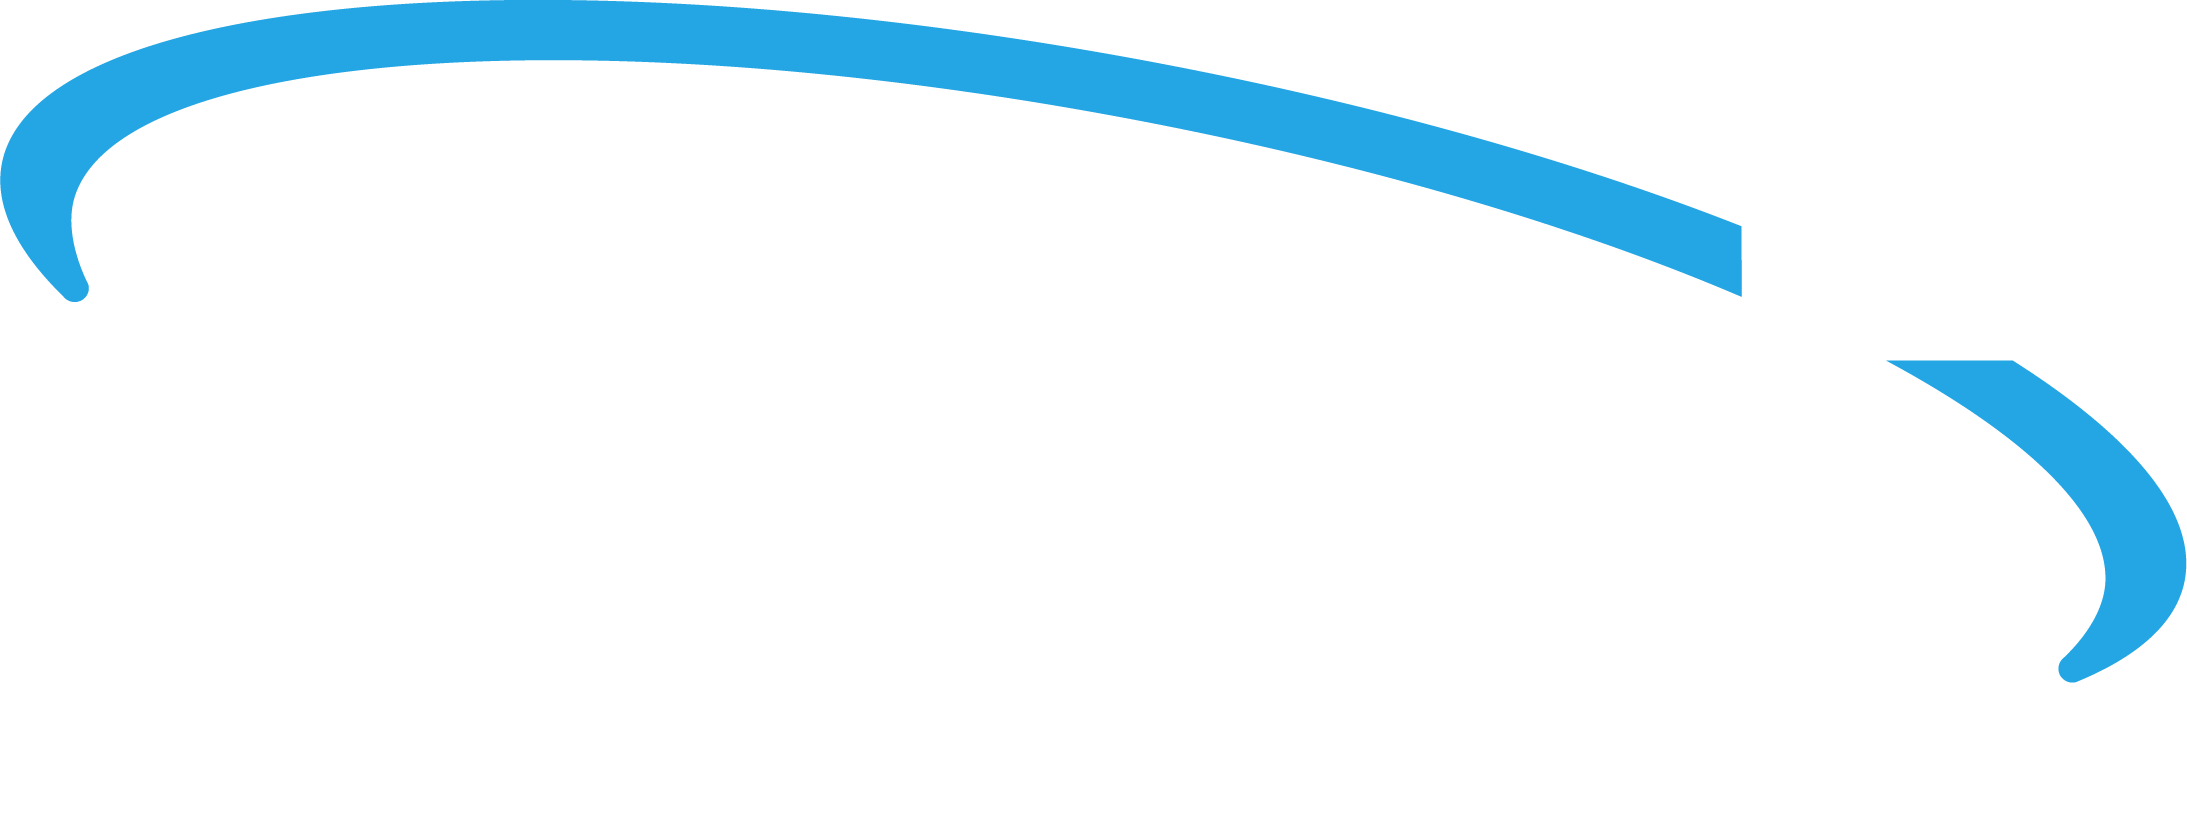 Planet Press